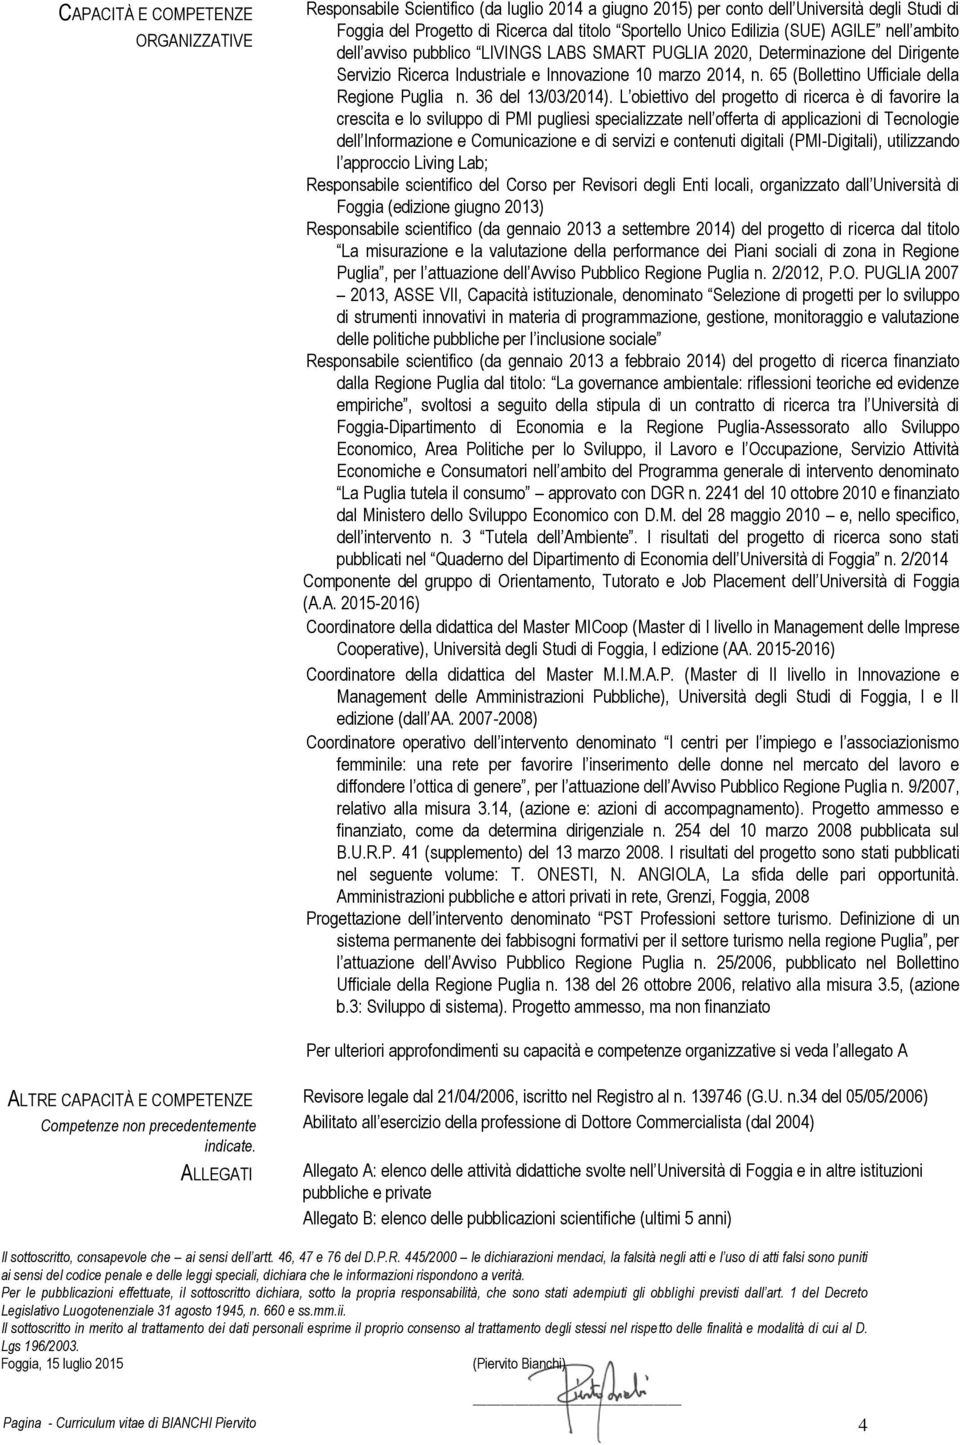 65 (Bollettino Ufficiale della Regione Puglia n. 36 del 13/03/2014).